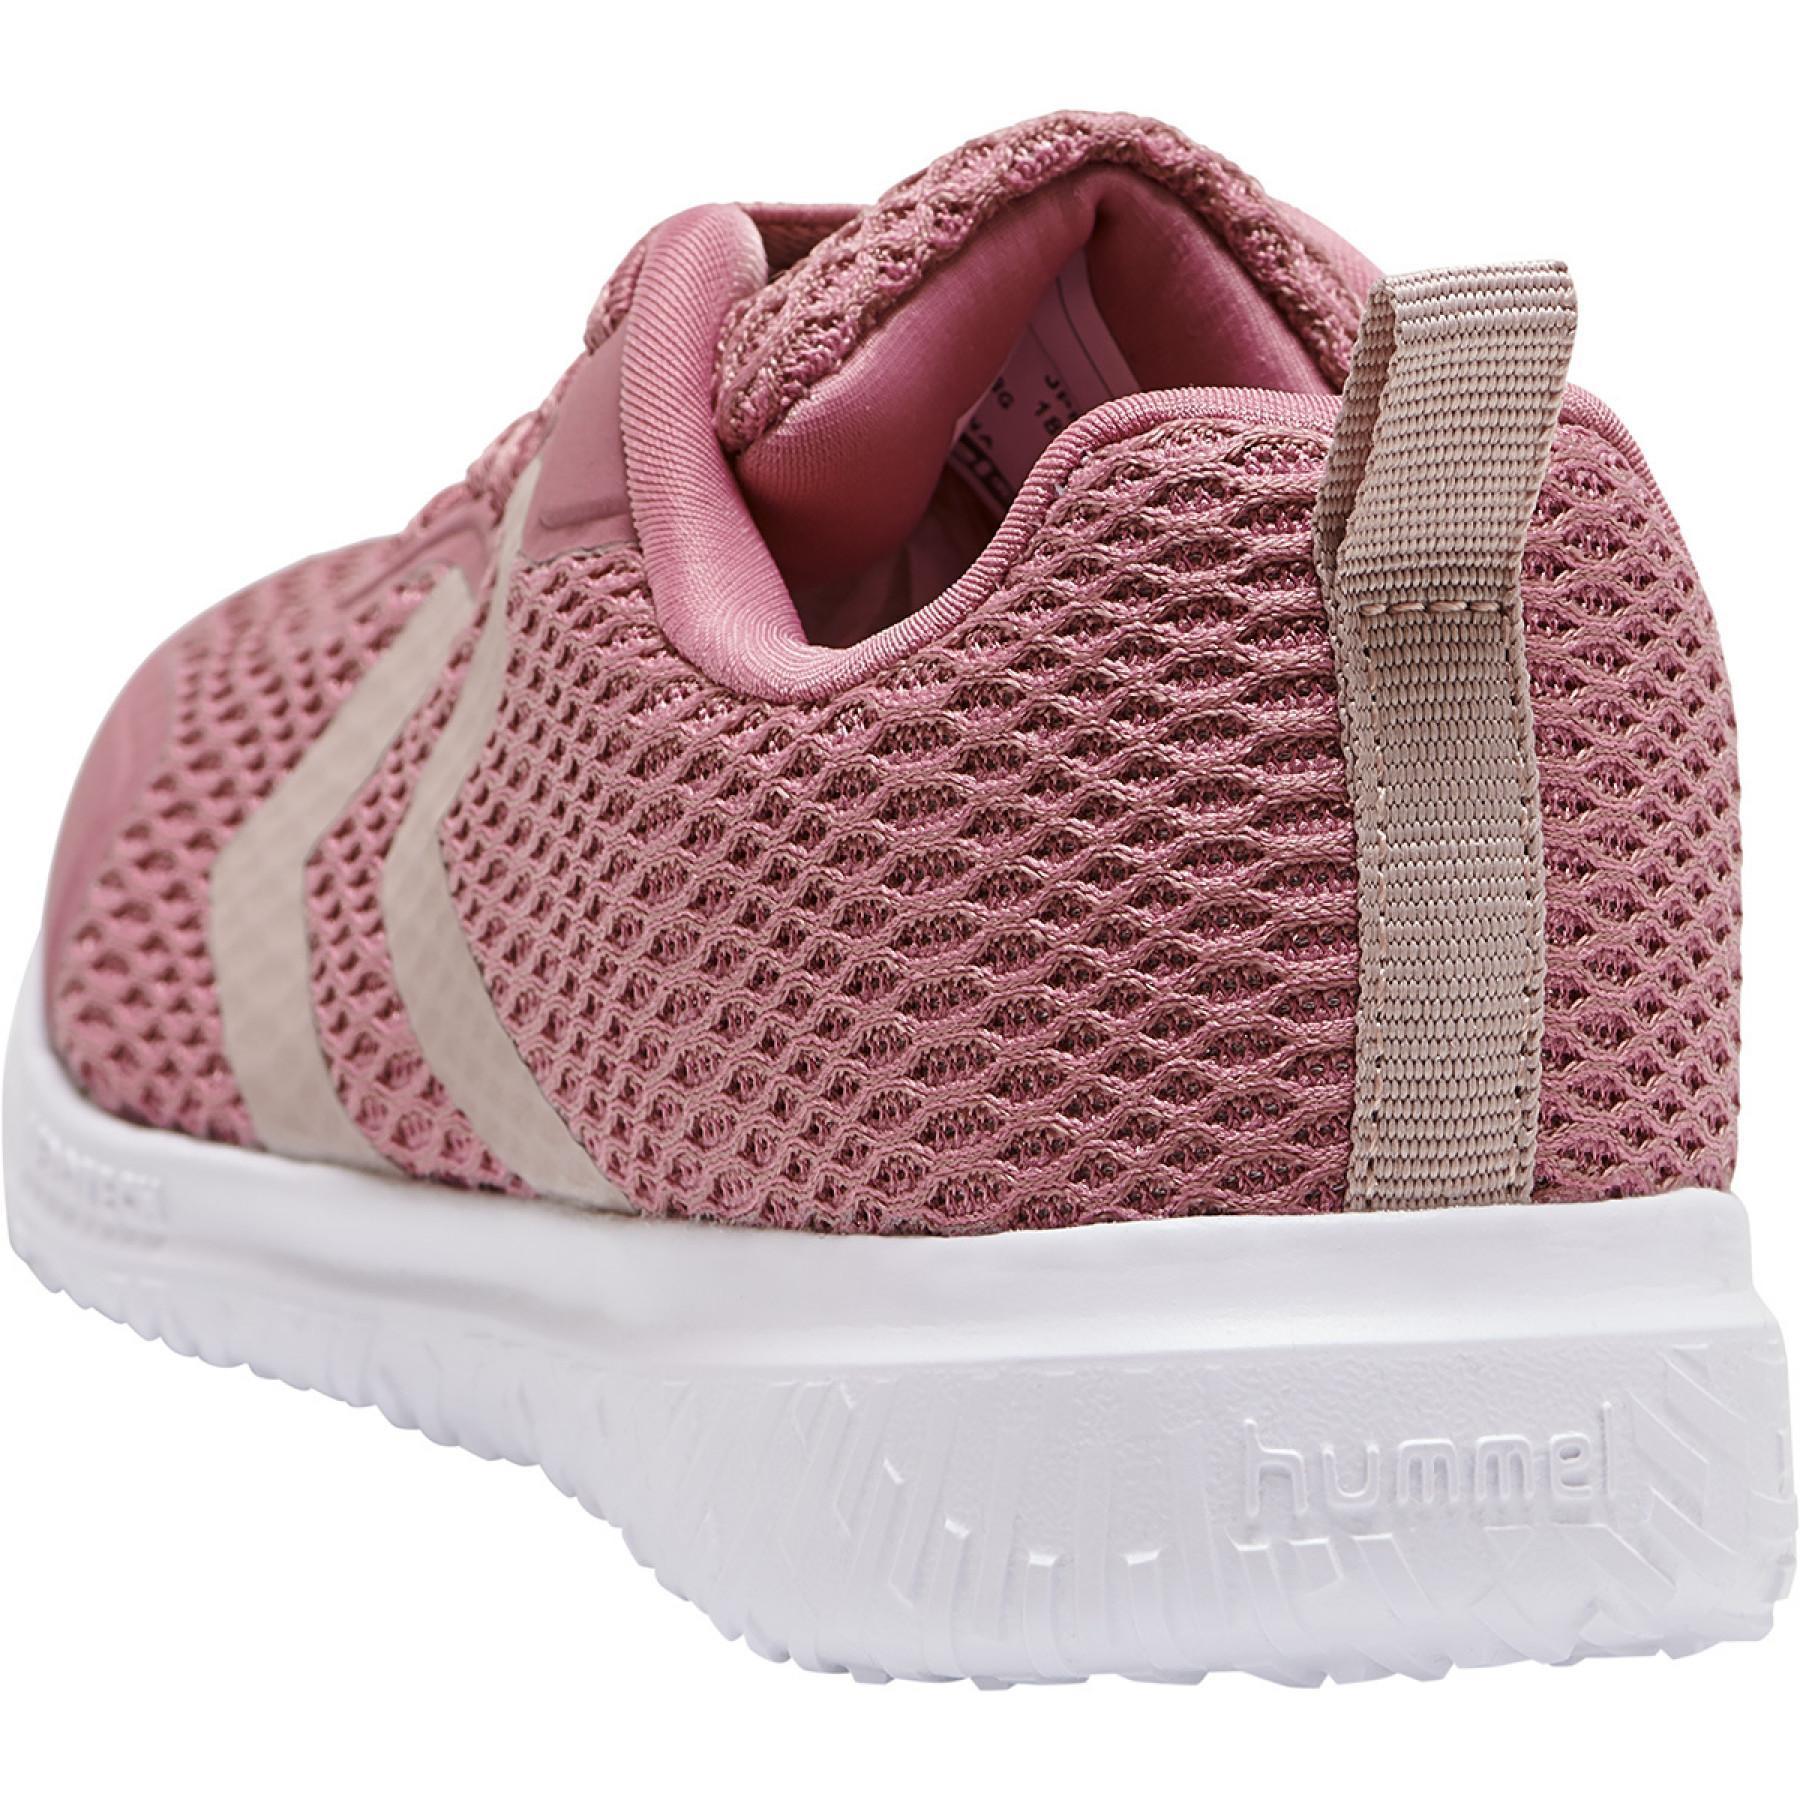 Children's sneakers Hummel actus ml